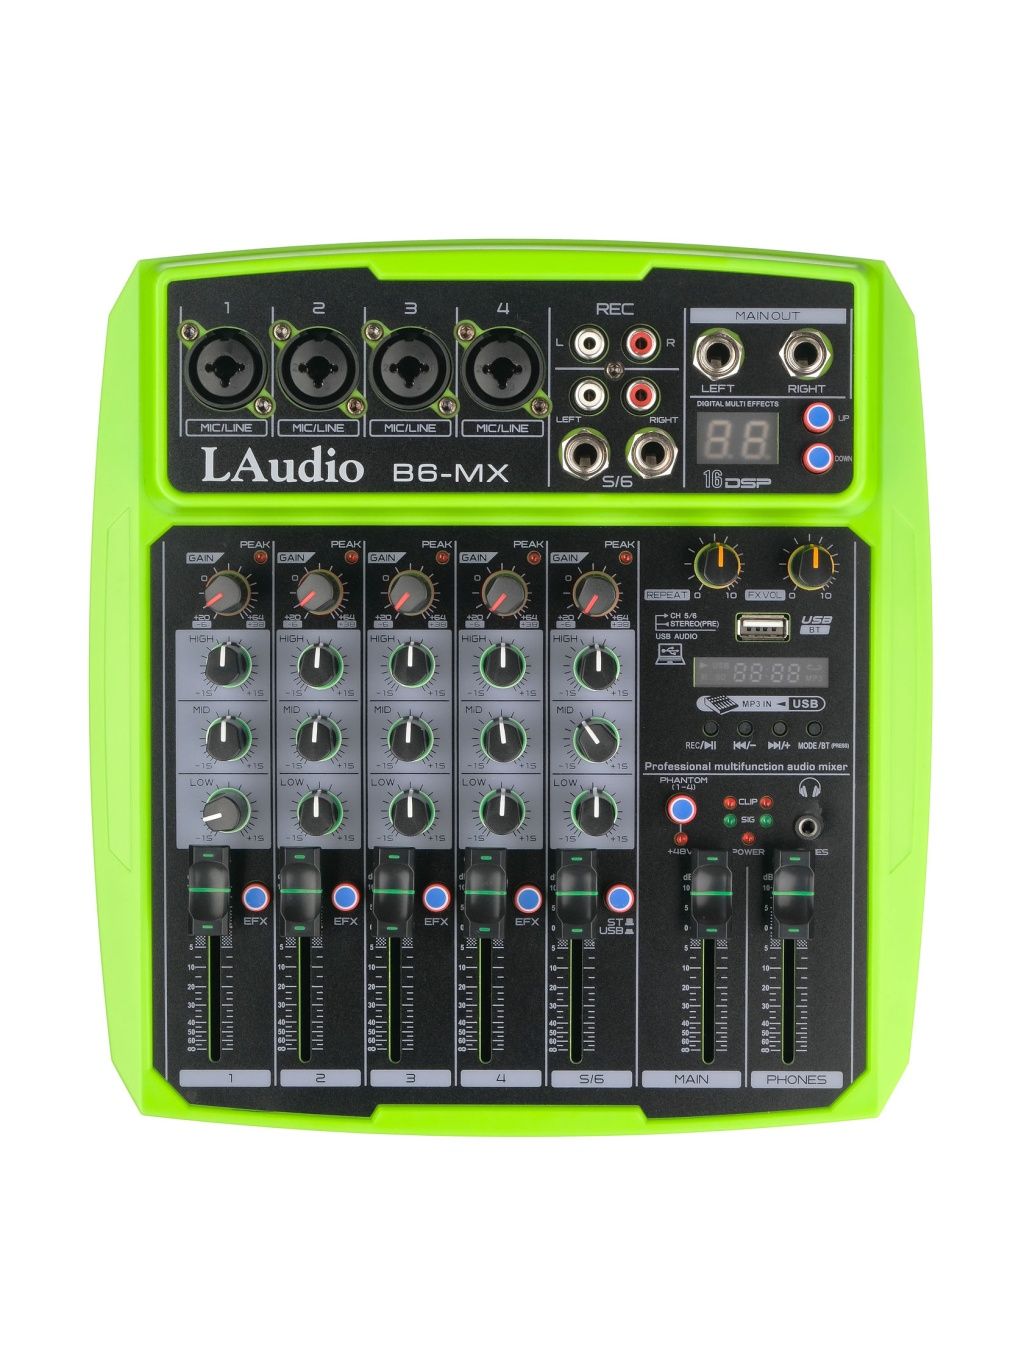 микшерные пульты аналоговые l audio t4 laudio Микшерные пульты аналоговые L Audio B6-MX